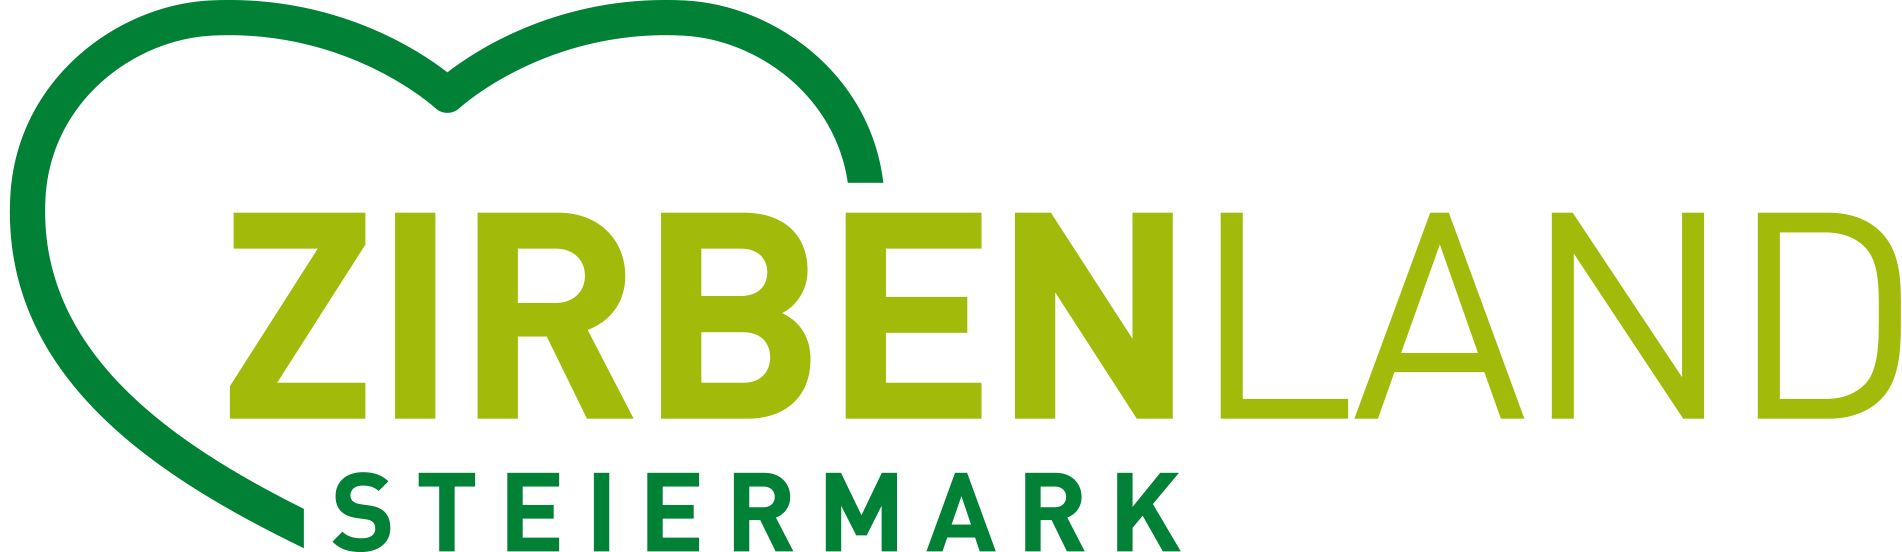 Logo Zirbenland Steiermark transparent